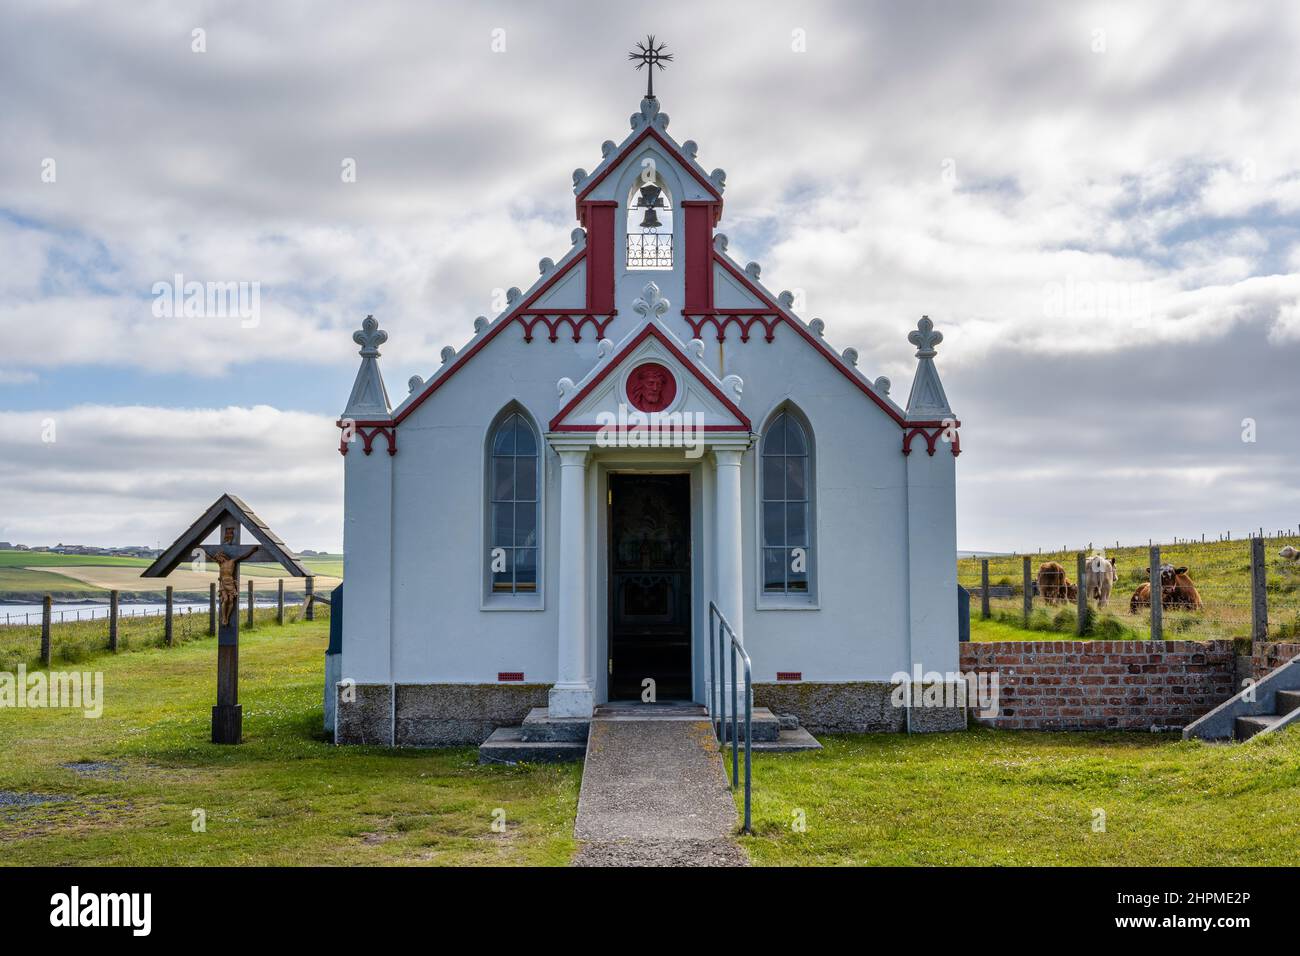 Extérieur de la chapelle italienne, construite par les prisonniers de guerre italiens en WW2, sur la petite île d'Lamb Holm, Orkney Isles, Écosse, Royaume-Uni Banque D'Images